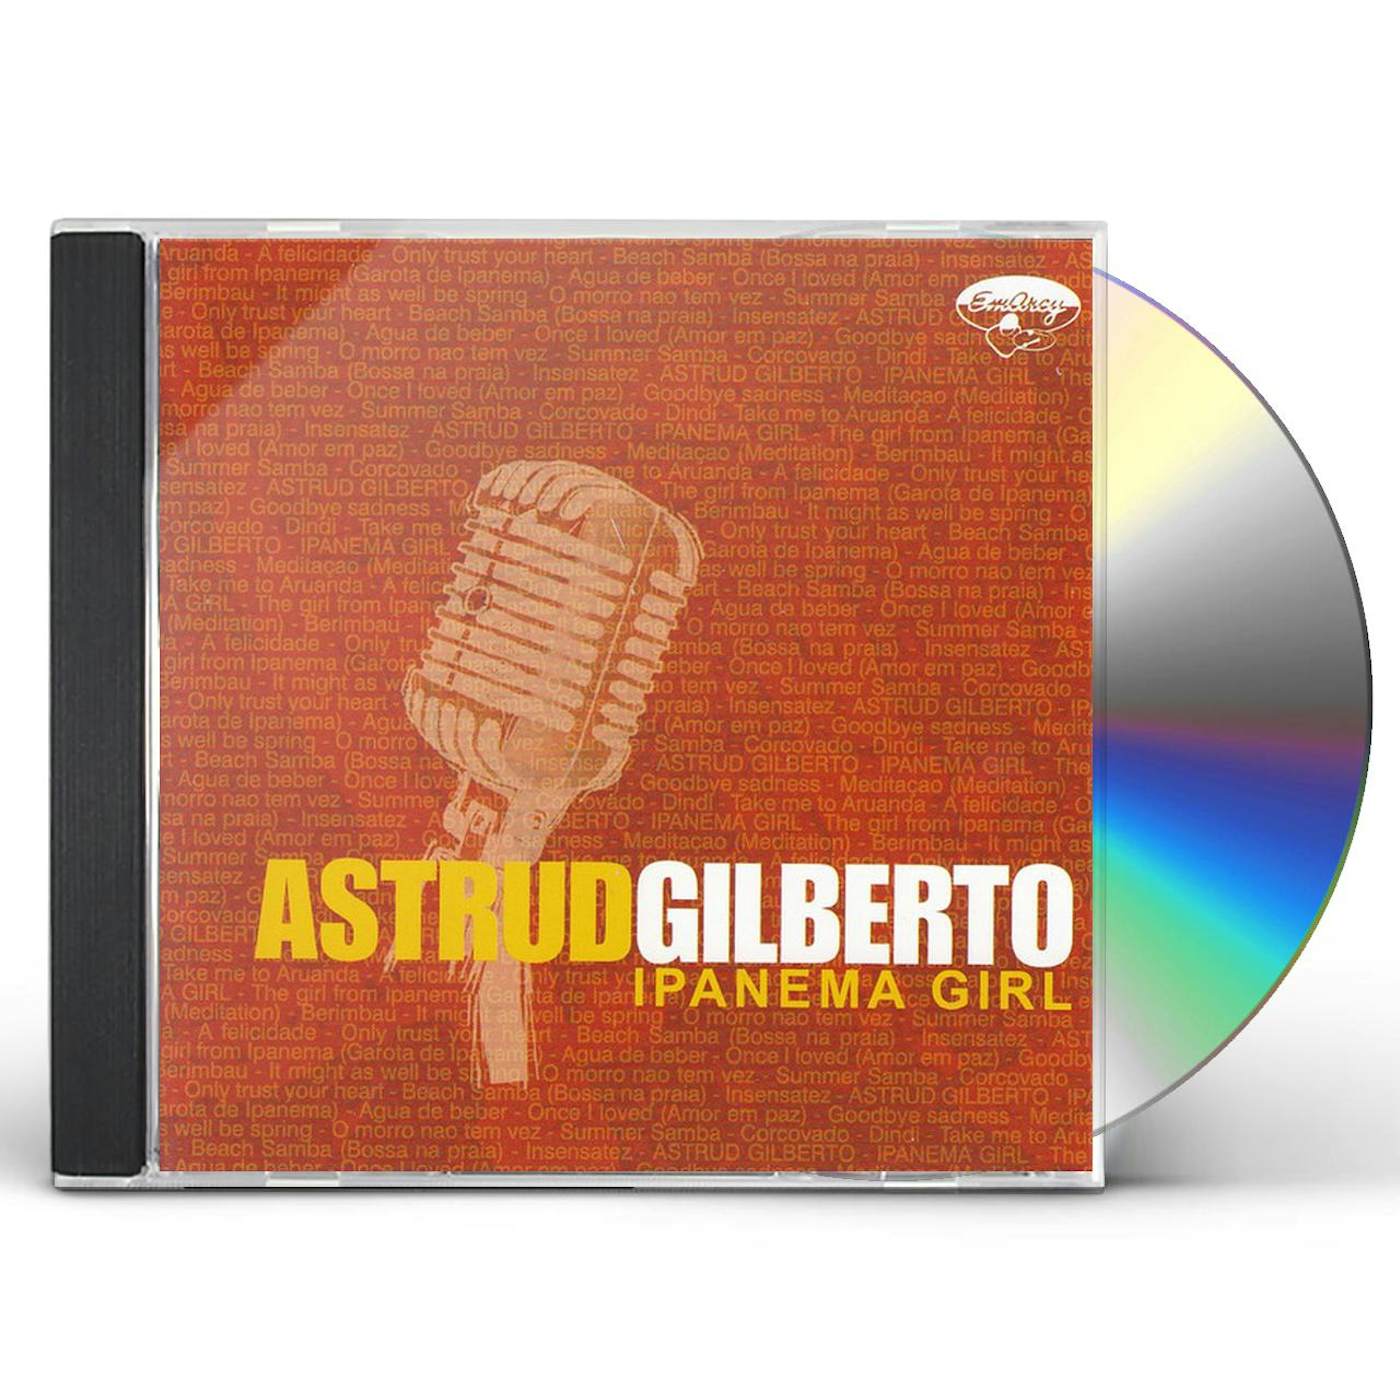 Astrud Gilberto COMPACT JAZZ CD